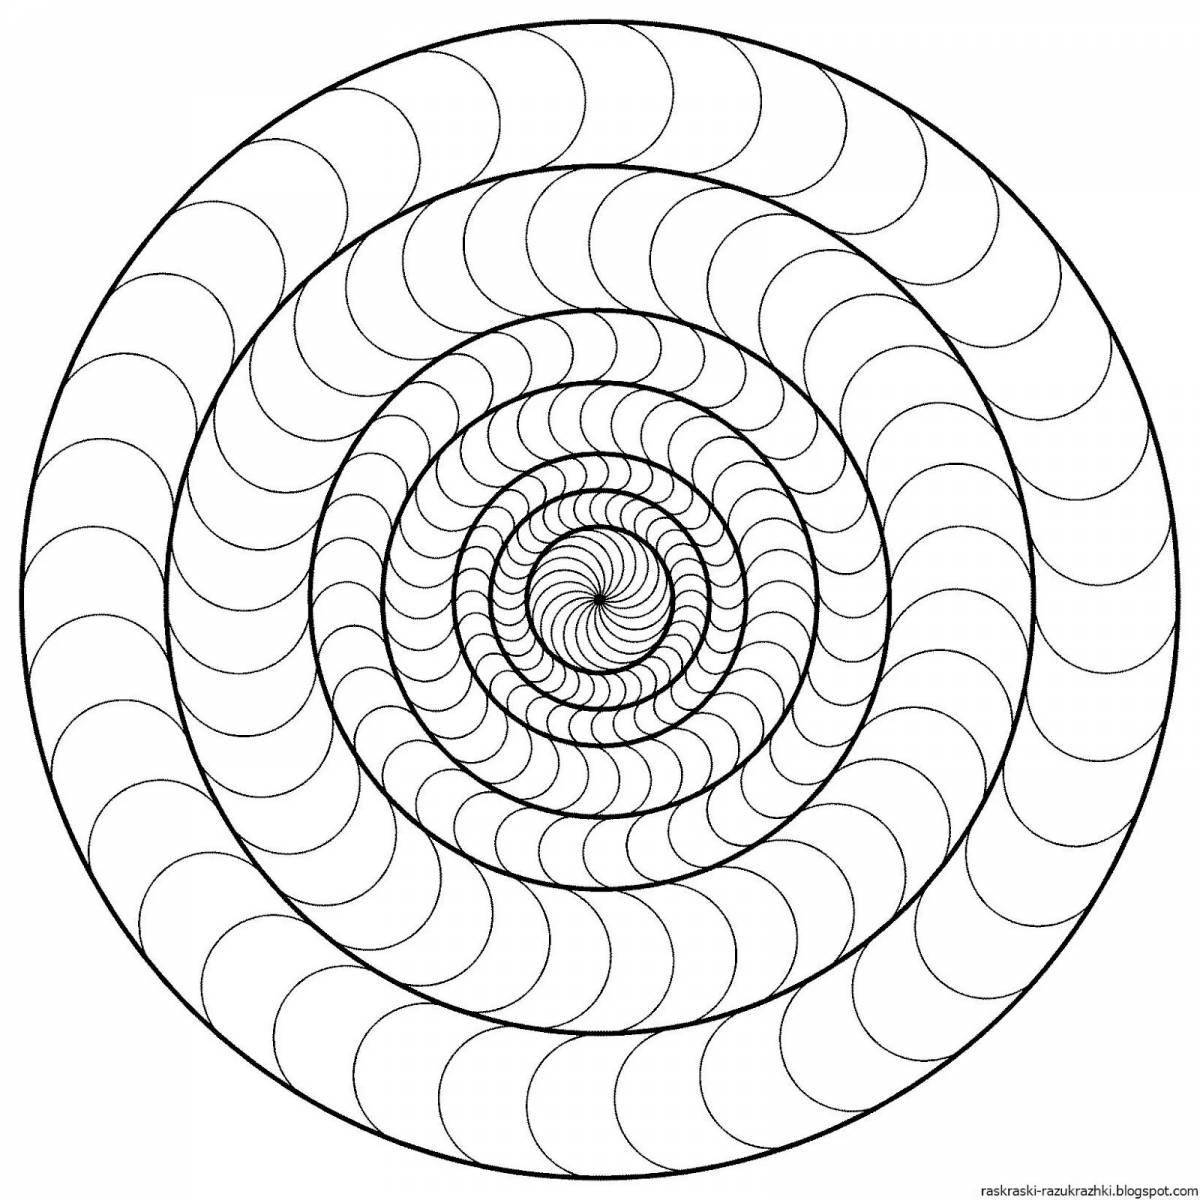 Delicate spiral portrait